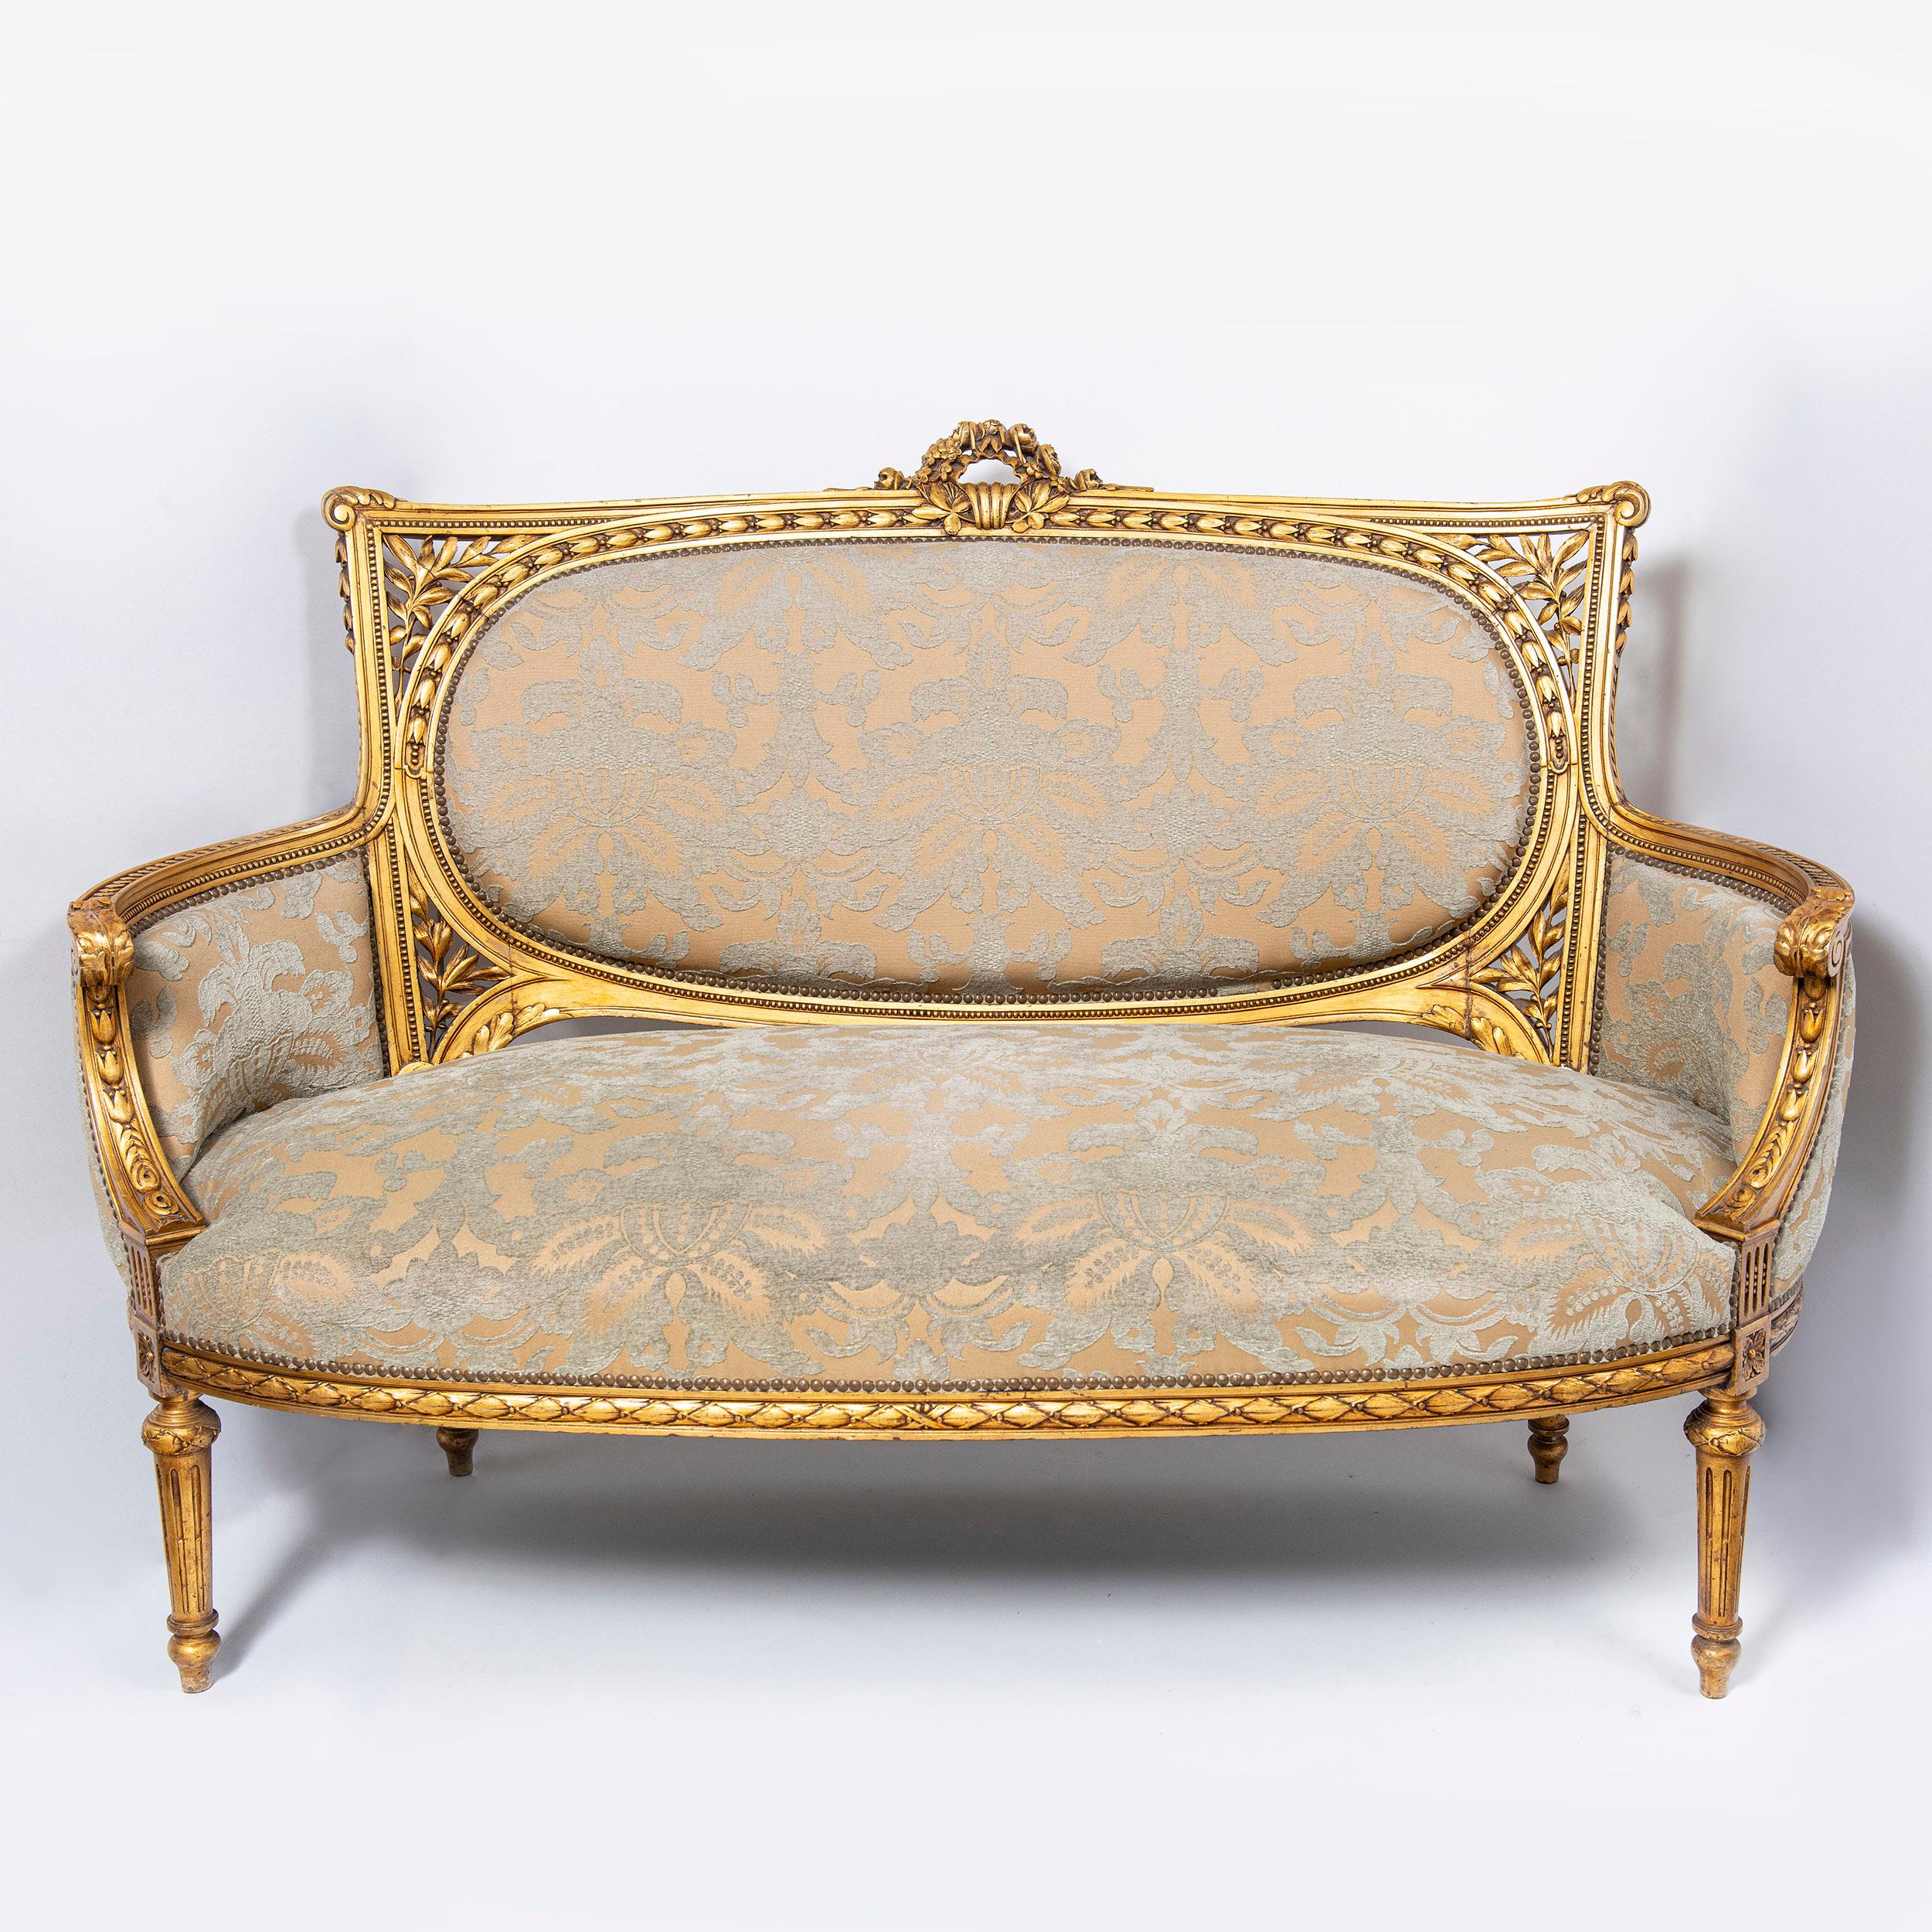 Ensemble de sept pièces en bois patiné et feuilles d'or. Attribué à la Maison Jansen, France, fin du XIXe siècle.
Un grand canapé, deux fauteuils et quatre chaises.

Dimensions : 
Grand canapé : 106 cm de hauteur, 153 cm de largeur, 80 cm de